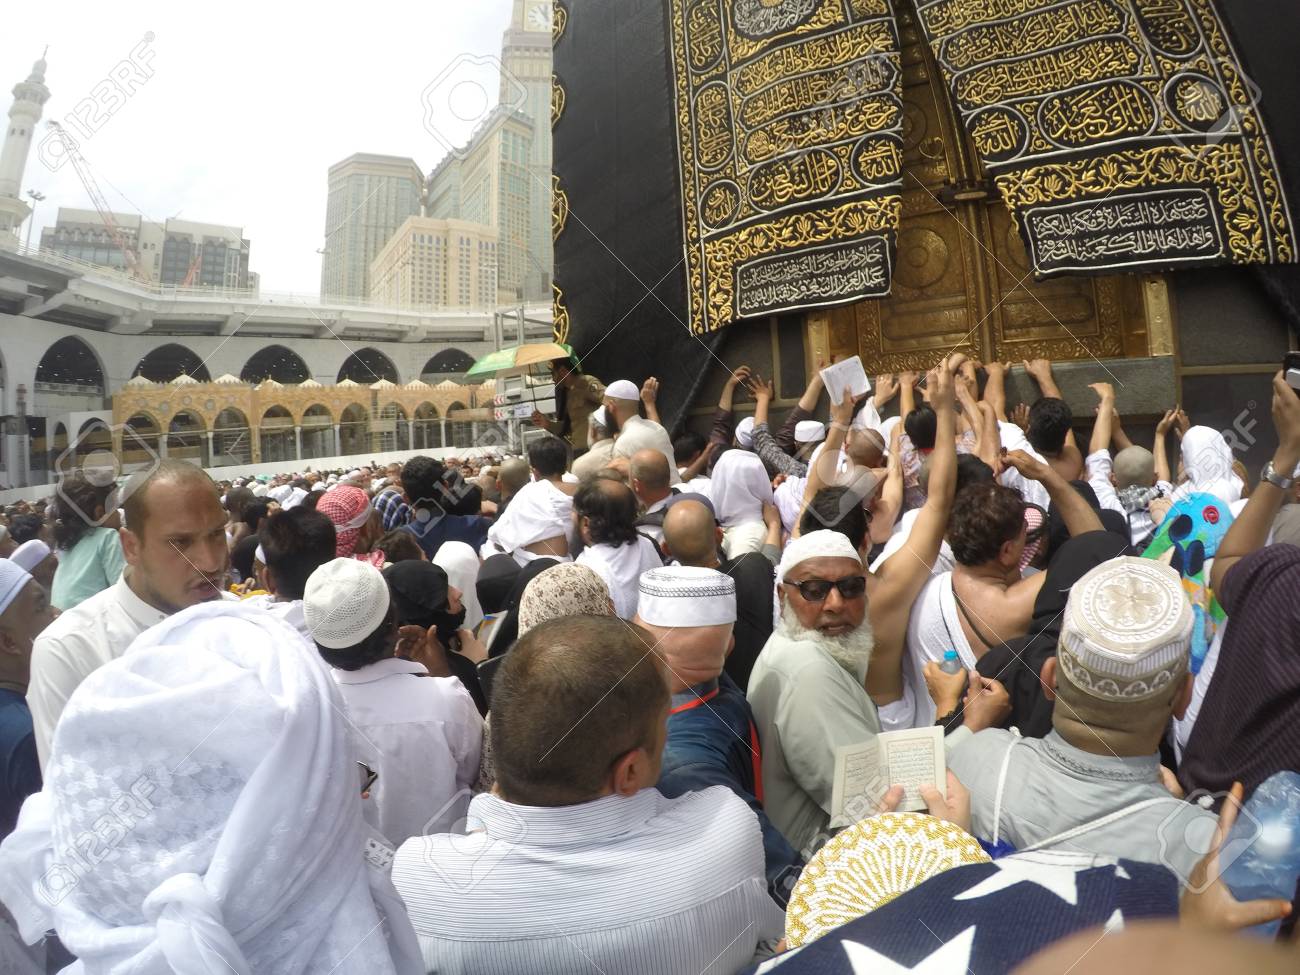 houbal le seigneur de la kaaba - La Kaaba - Les origines païennes pré-islamiques Ff0w